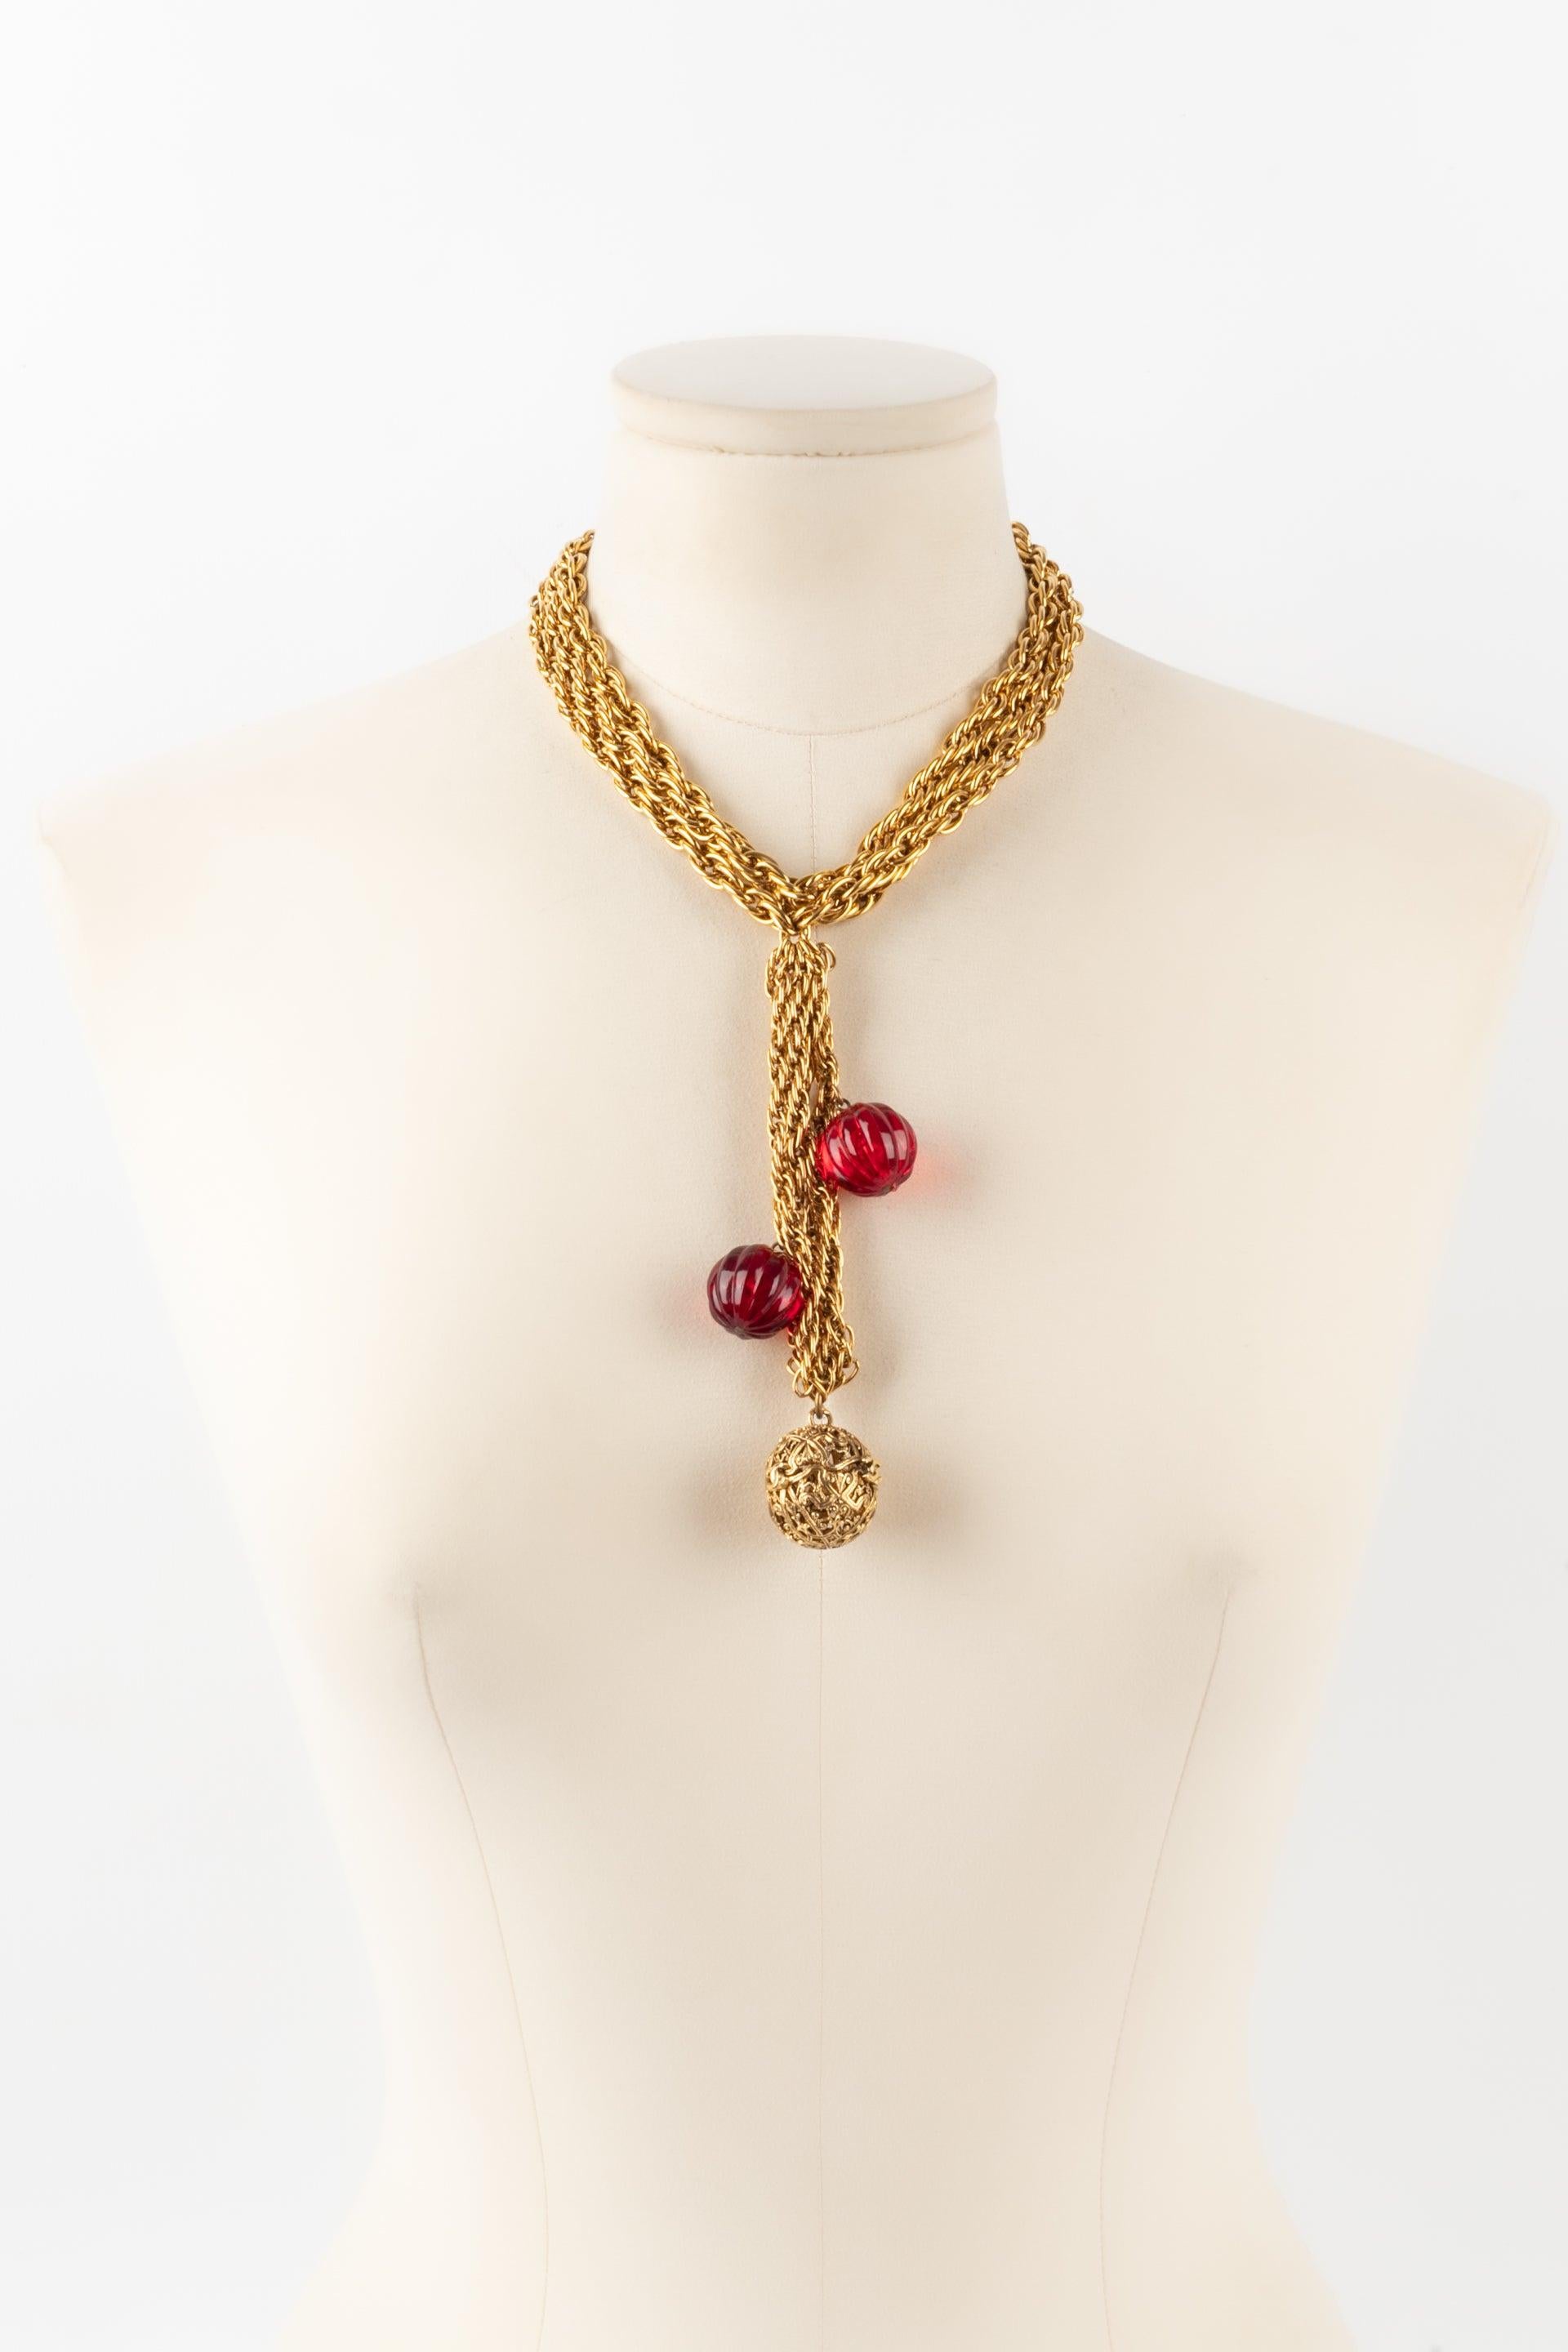 Chanel - (Fabriqué en France) Collier en métal doré avec perles rouges. Collectional 1984.

Informations complémentaires :
Condit : Très bon état.
Dimensions : Longueur : 42 cm

Référence du vendeur : CB208